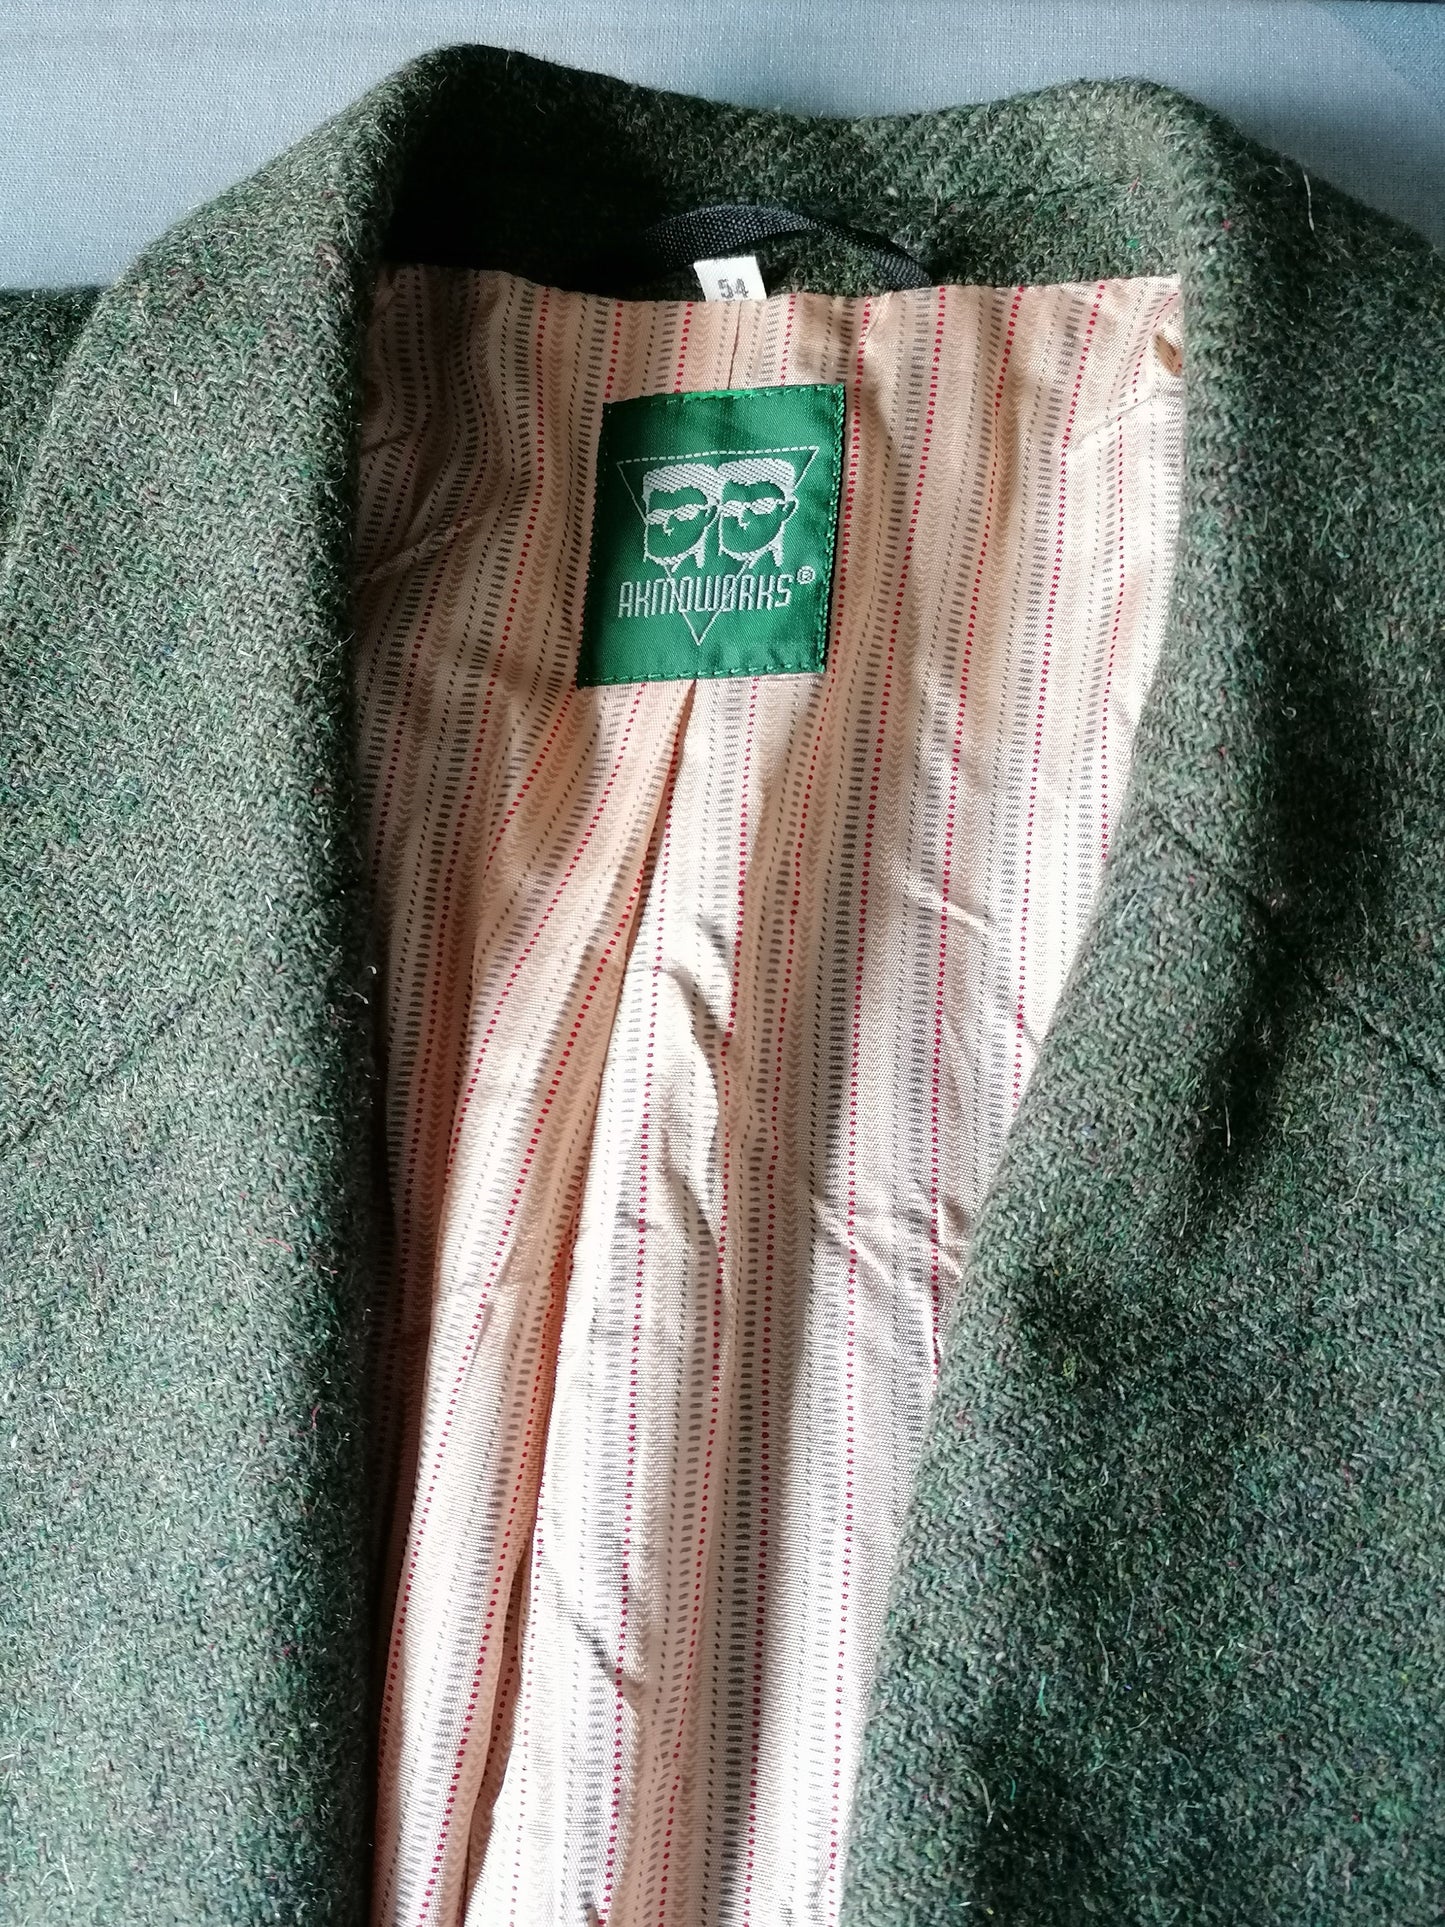 Vintage Akmogorks Tweedjacke. Grün gemischt. Größe XL.